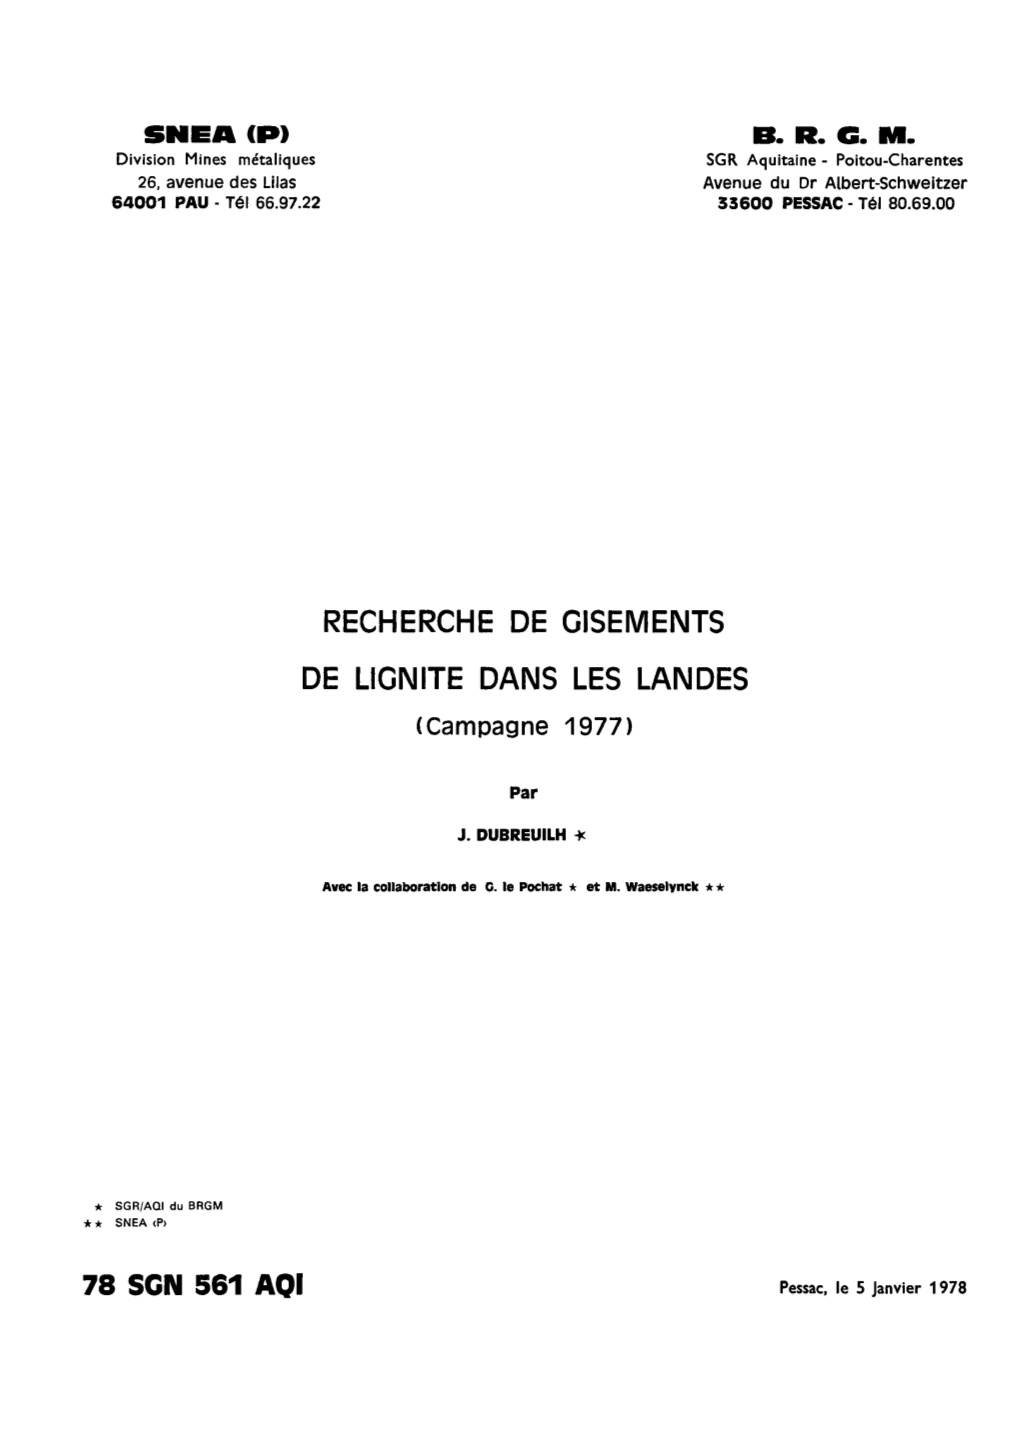 RECHERCHE DE GISEMENTS DE LIGNITE DANS LES LANDES (Campagne 1977)